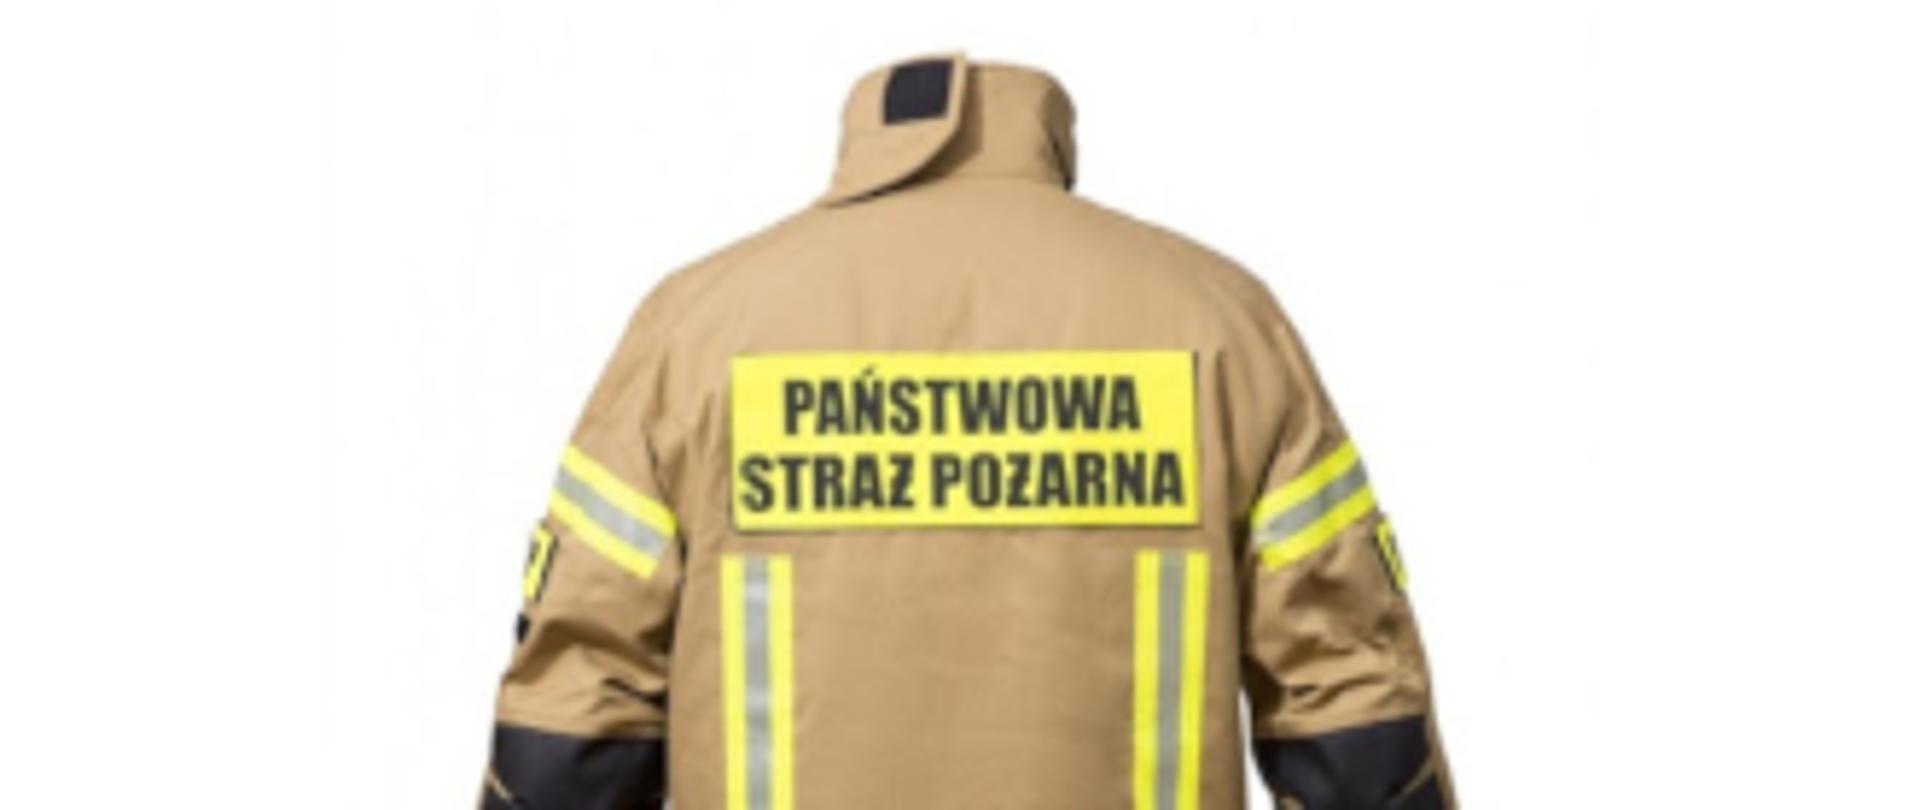 ubranie specjalne, kurtka z napisem państwowa straż pożarna